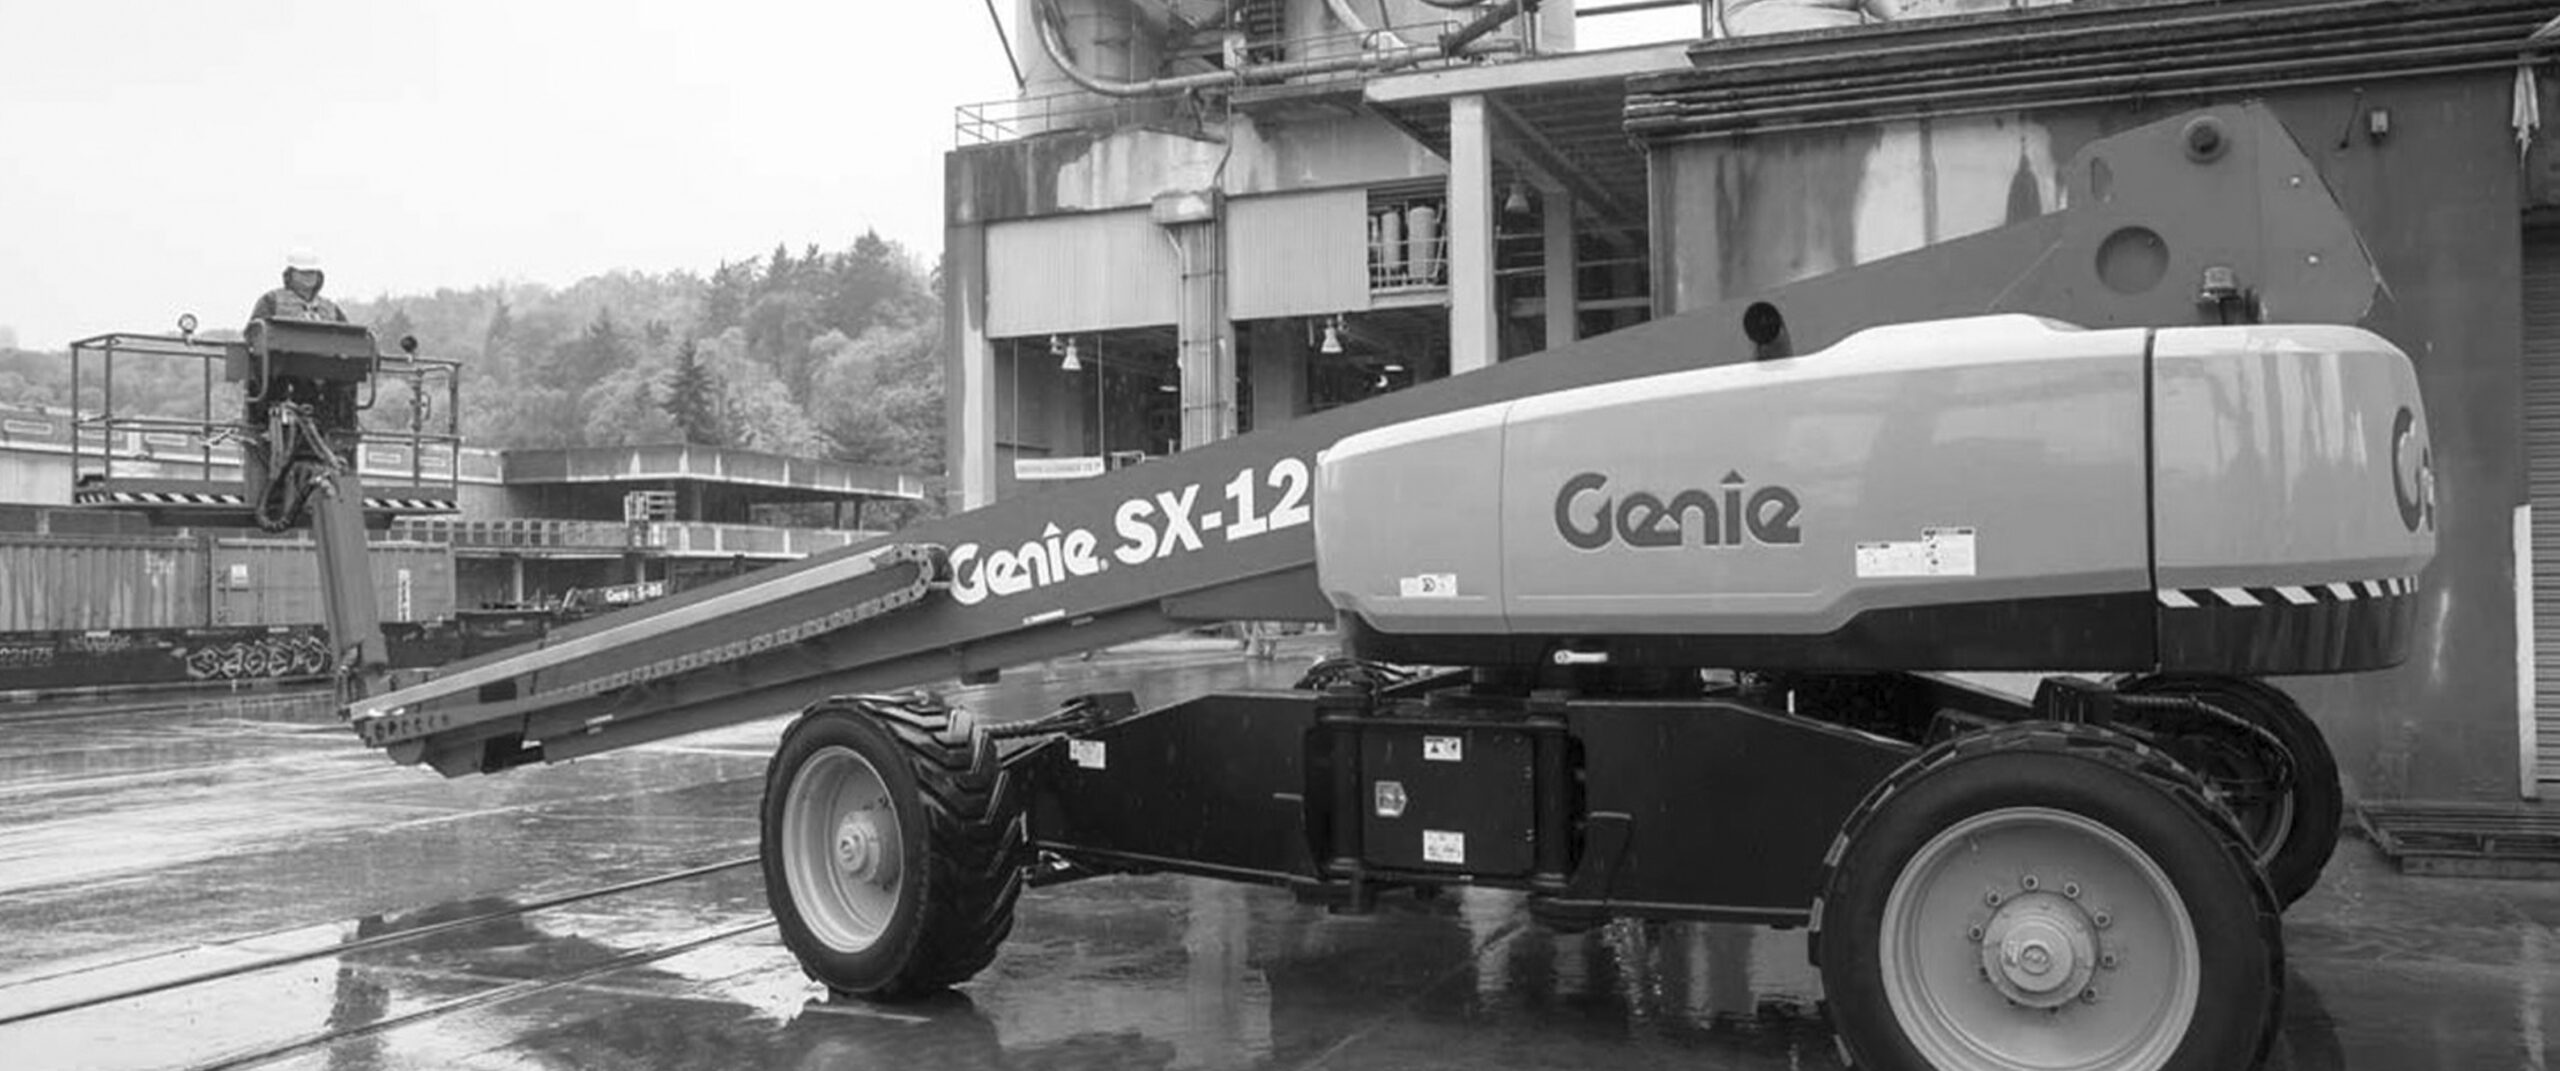 Genie SX-125